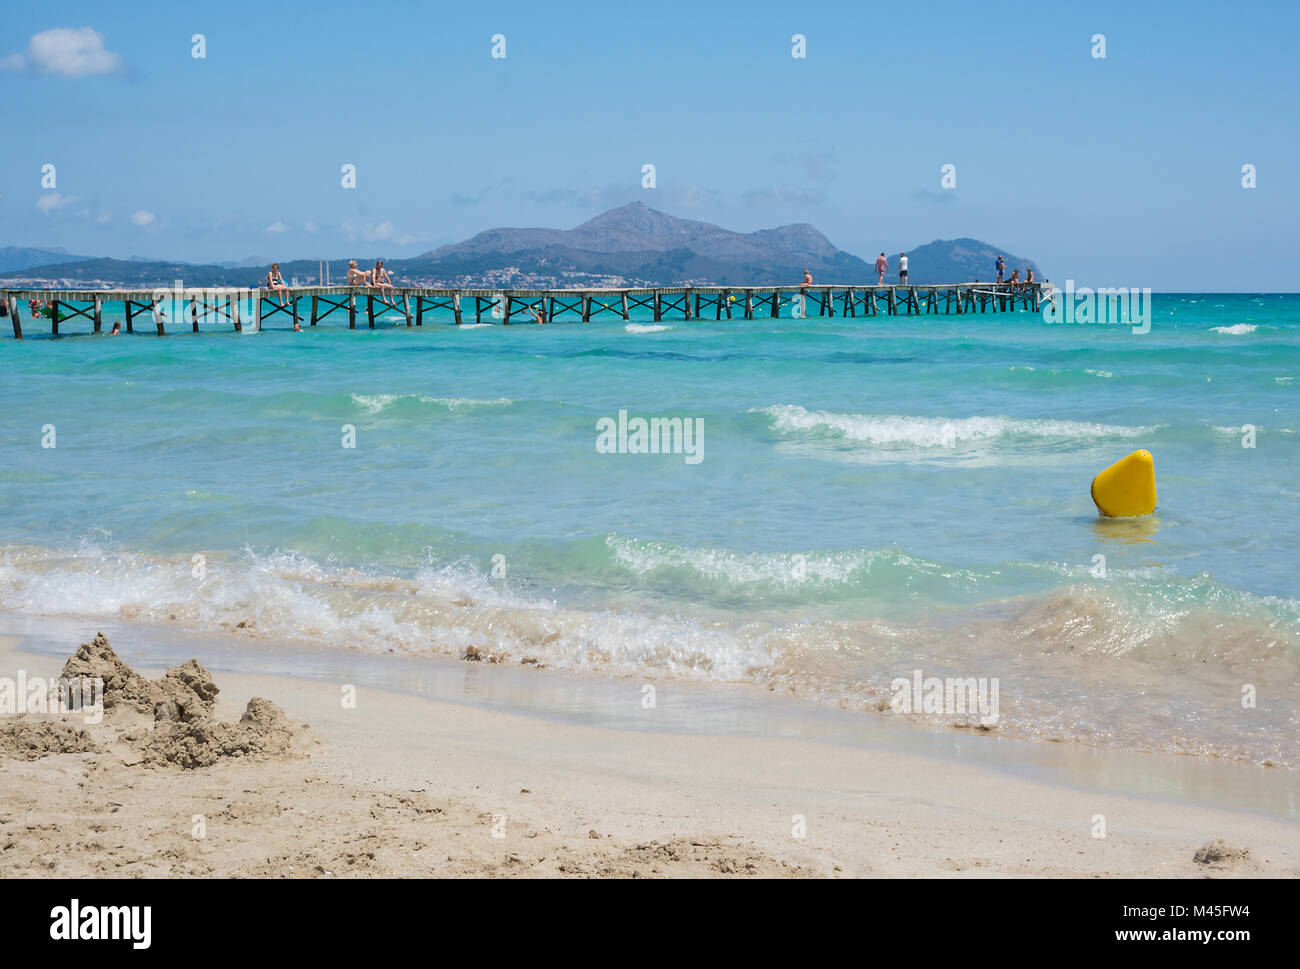 Playa de Muro Majorca Stock Photo